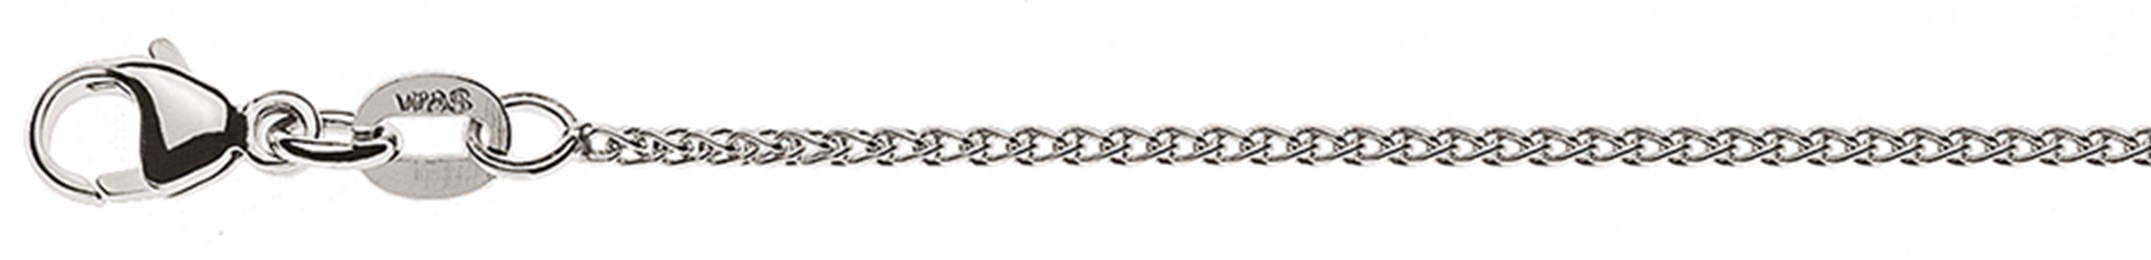 AURONOS Style Halskette Weissgold 9K Zopfkette 45cm 1.2mm